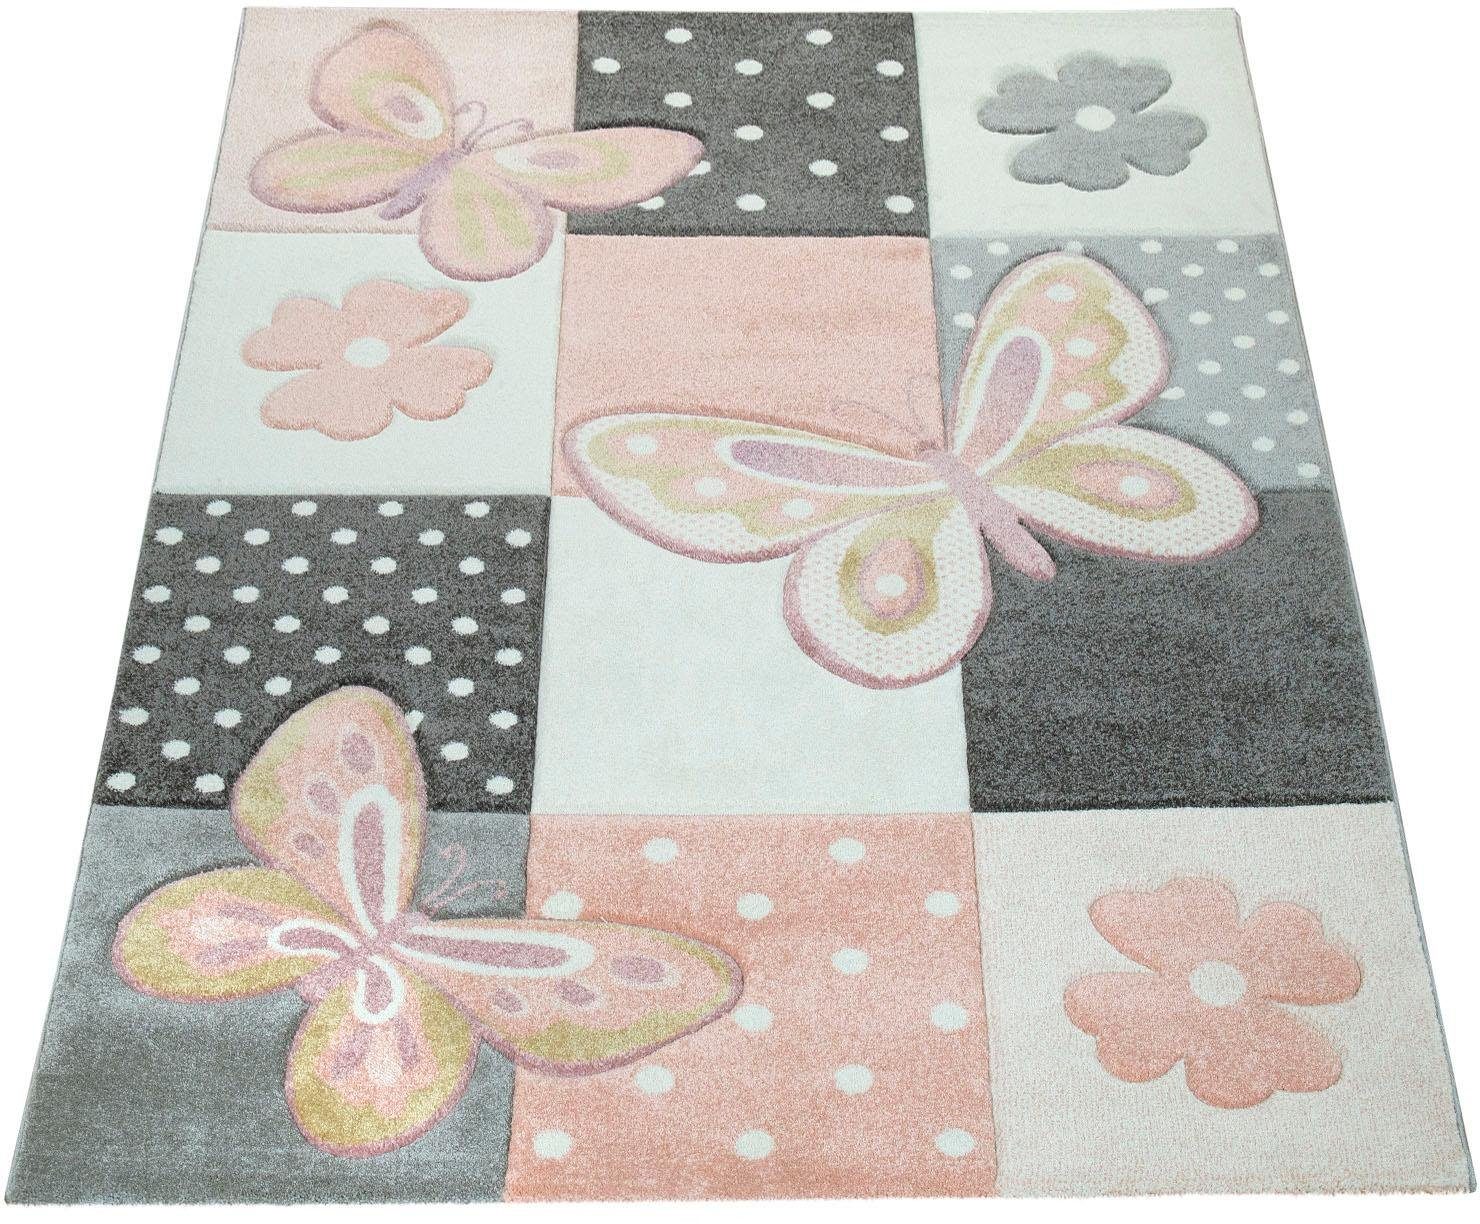 Paco Home Kinder Teppich Kinderzimmer Bunt Rosa Schmetterlinge Karo Muster Punkte Blumen, Grösse:200x290 cm